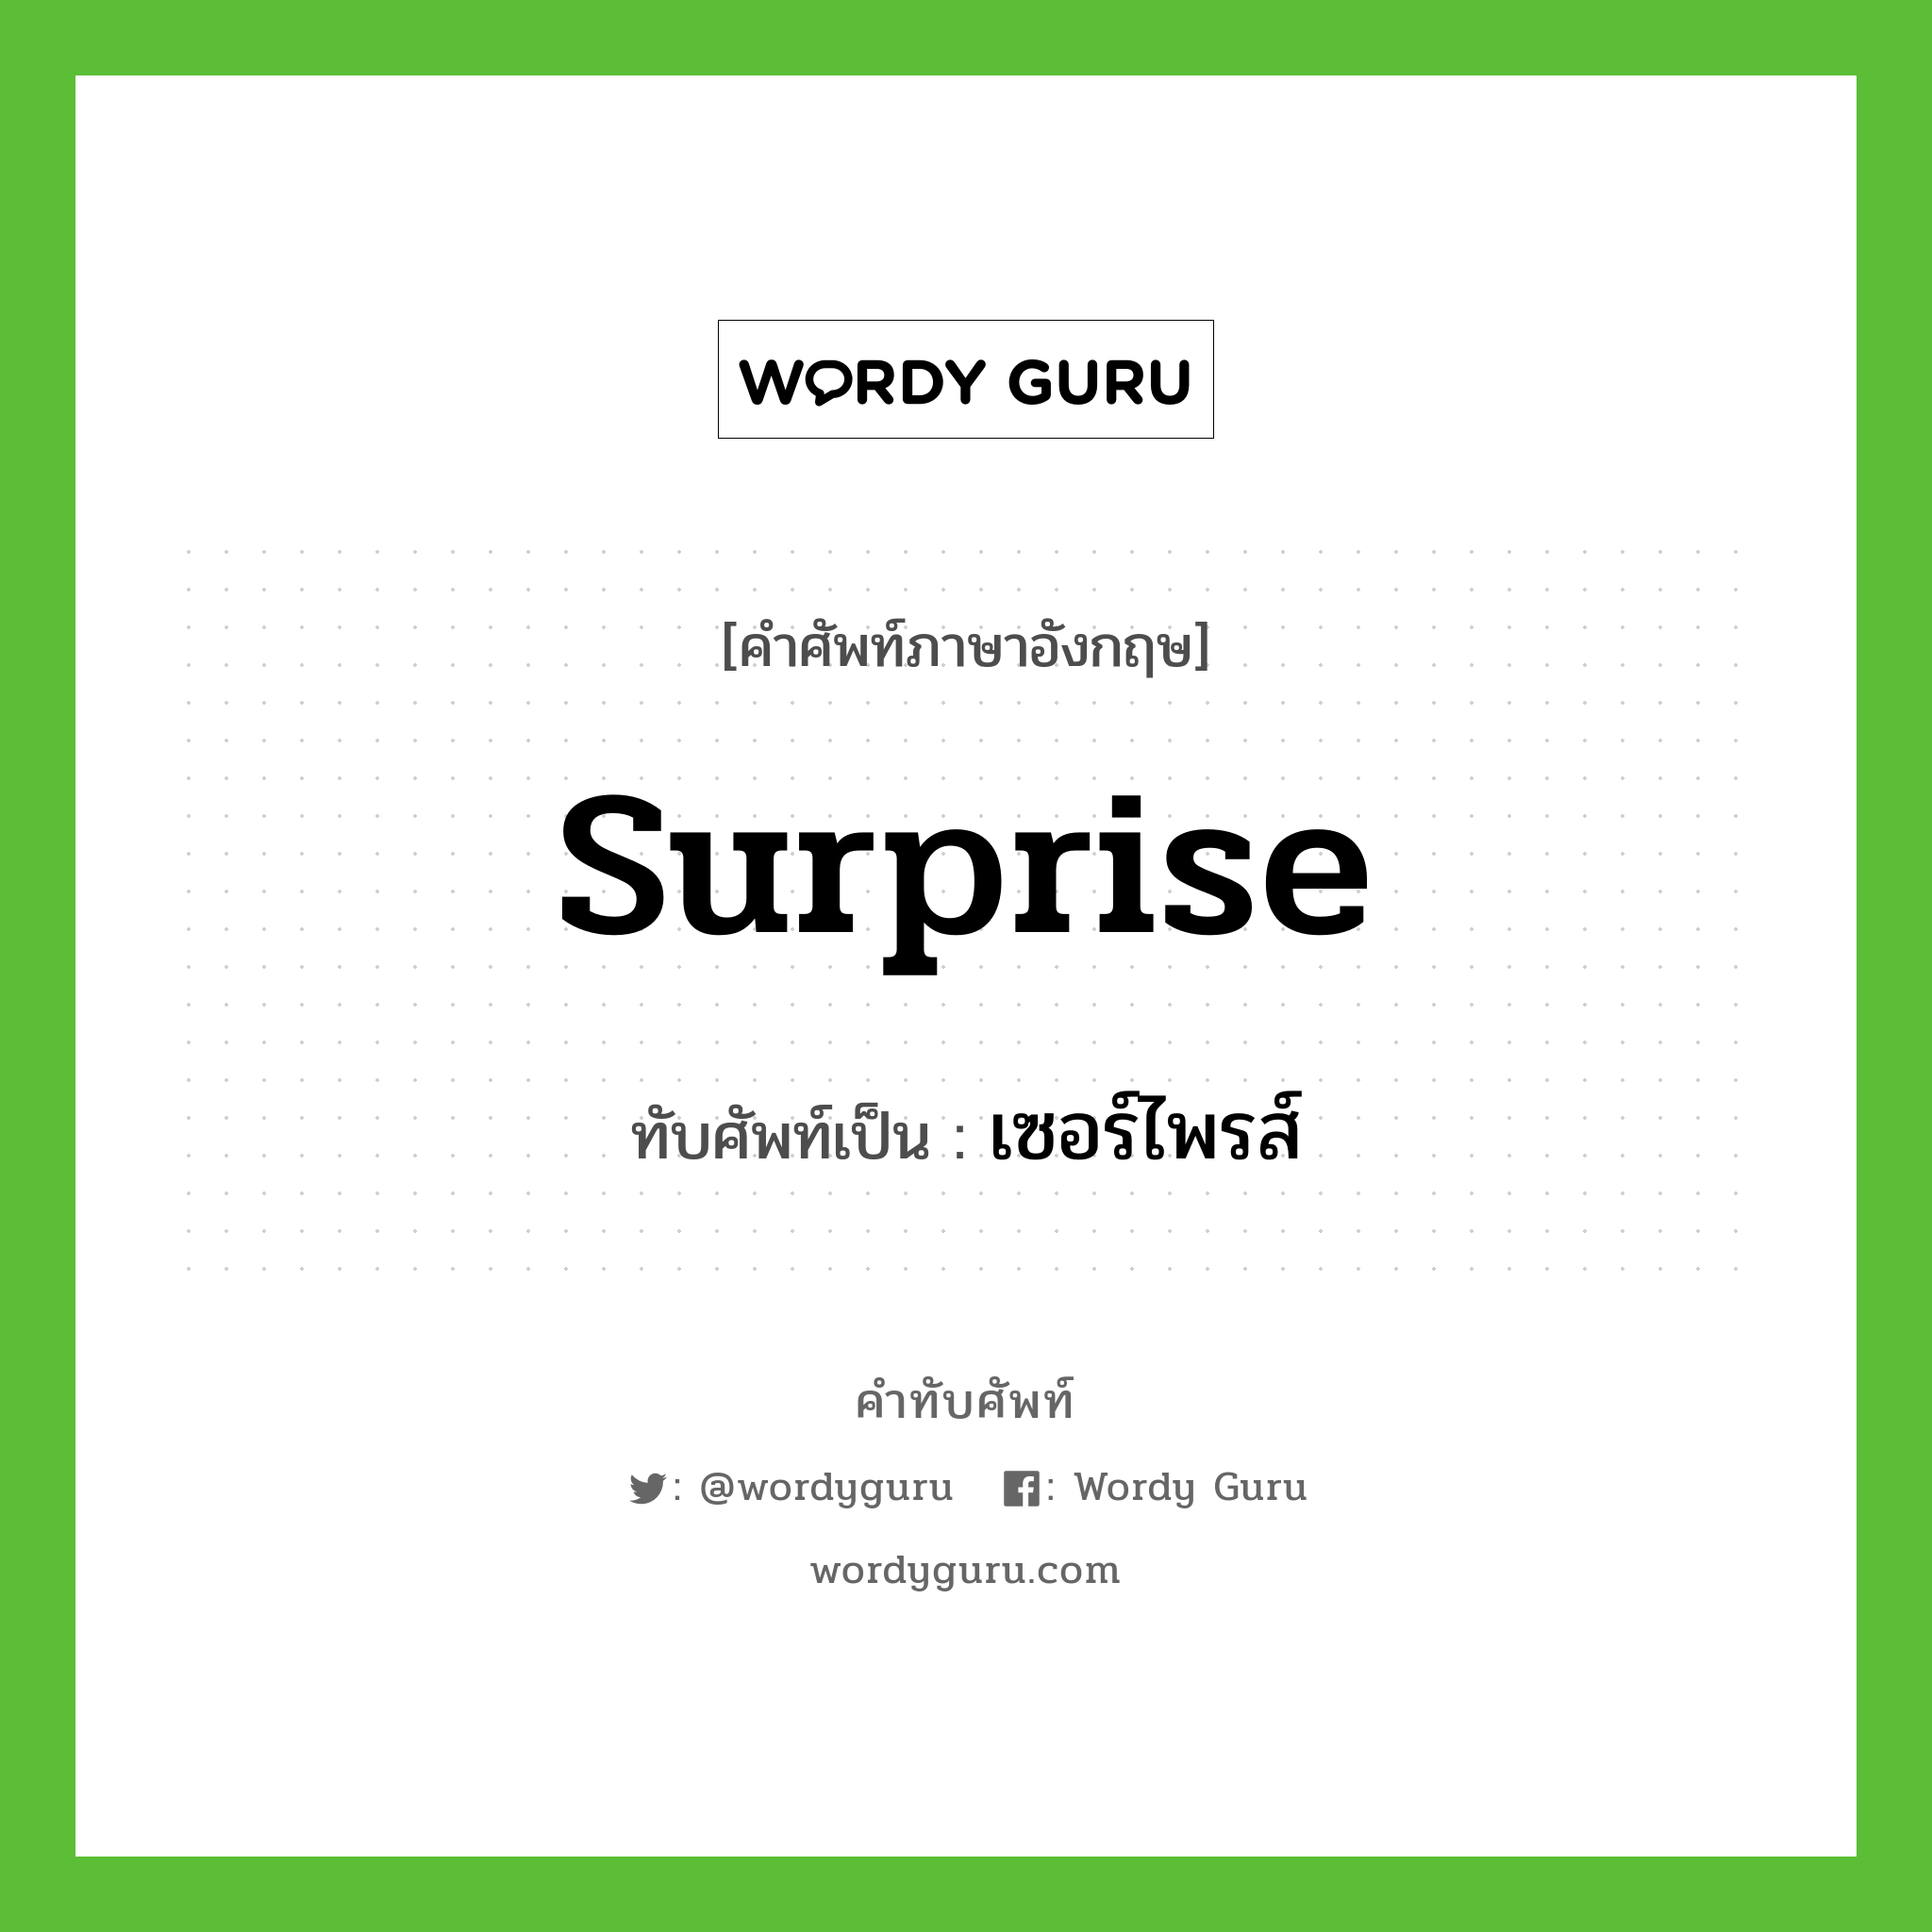 surprise เขียนเป็นคำไทยว่าอะไร?, คำศัพท์ภาษาอังกฤษ surprise ทับศัพท์เป็น เซอร์ไพรส์